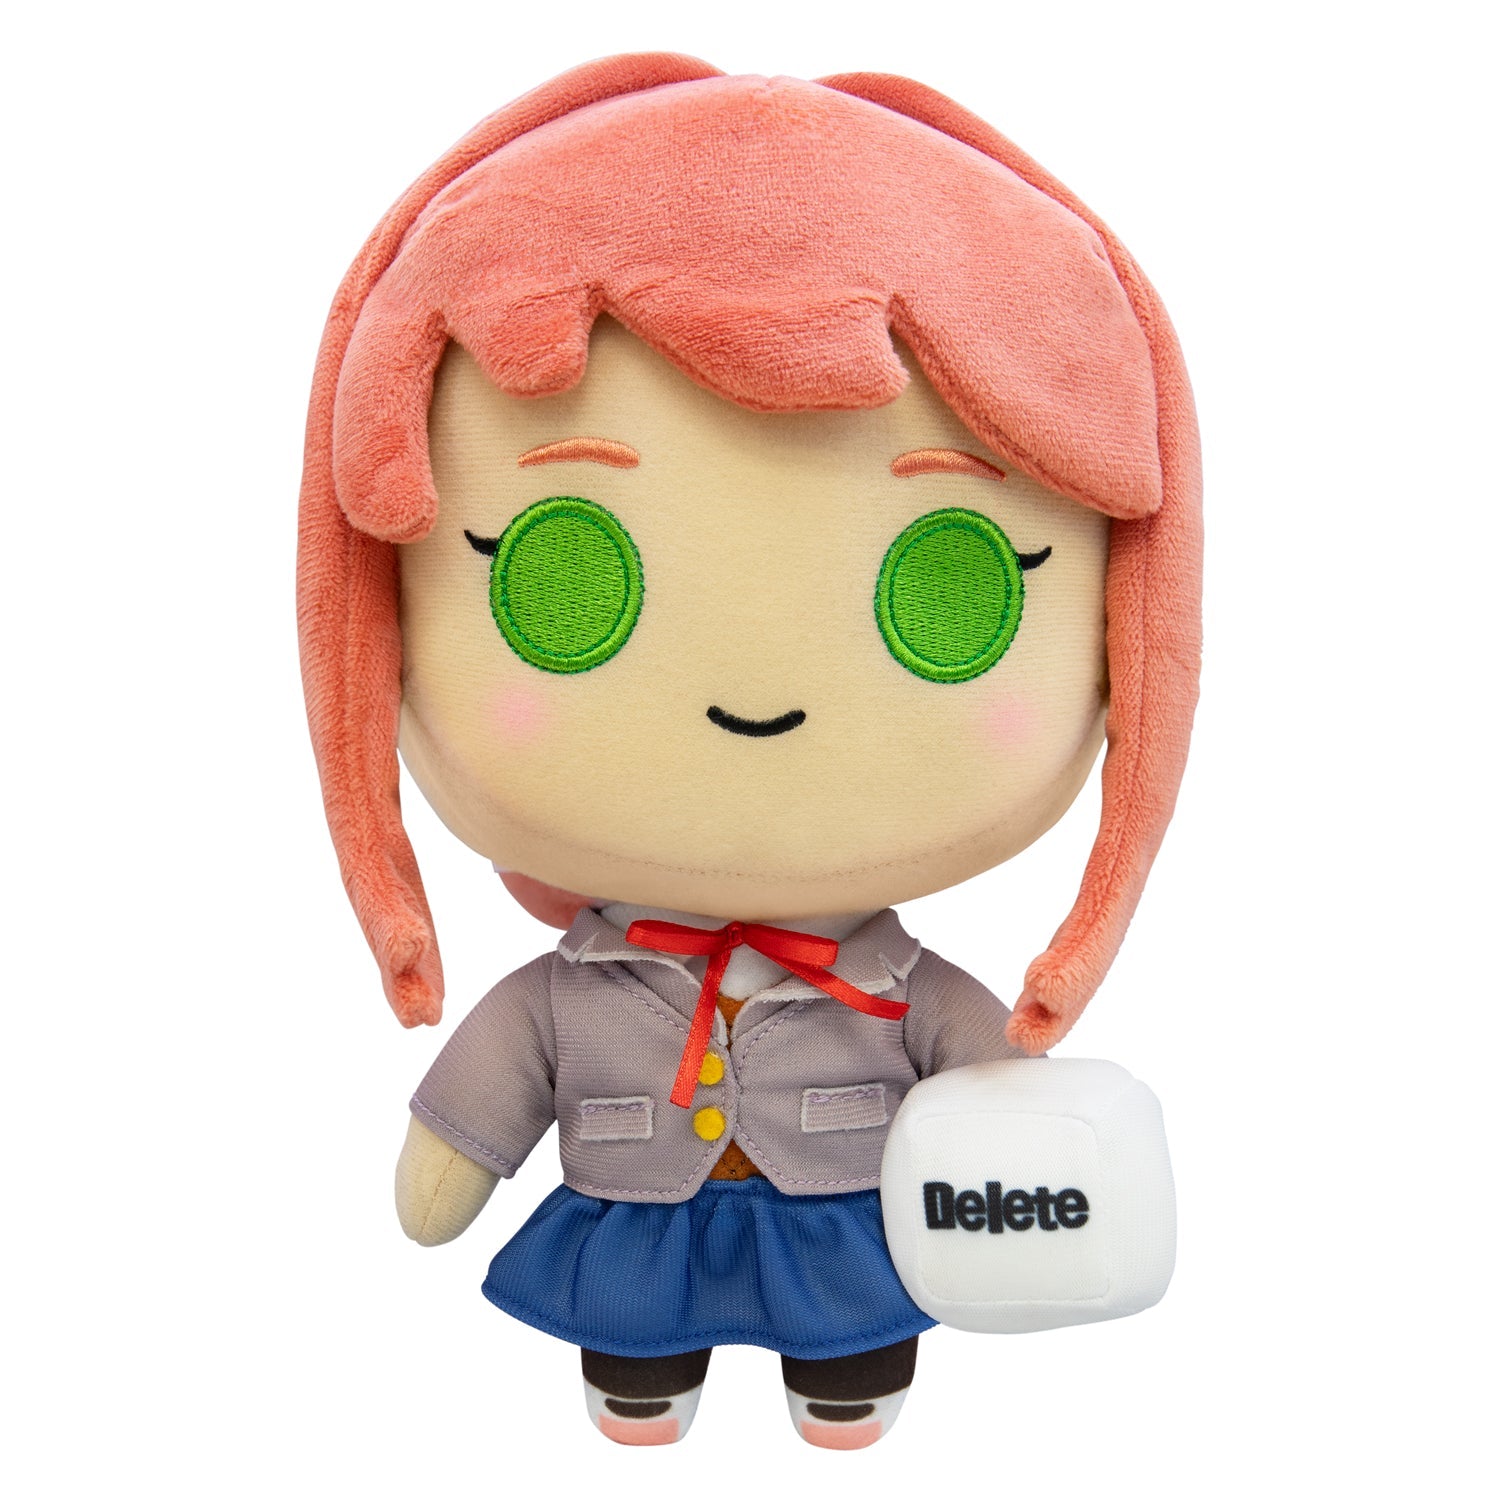 Doki Doki Literature Club - Monika 10 Collector's Plush Toy 💚